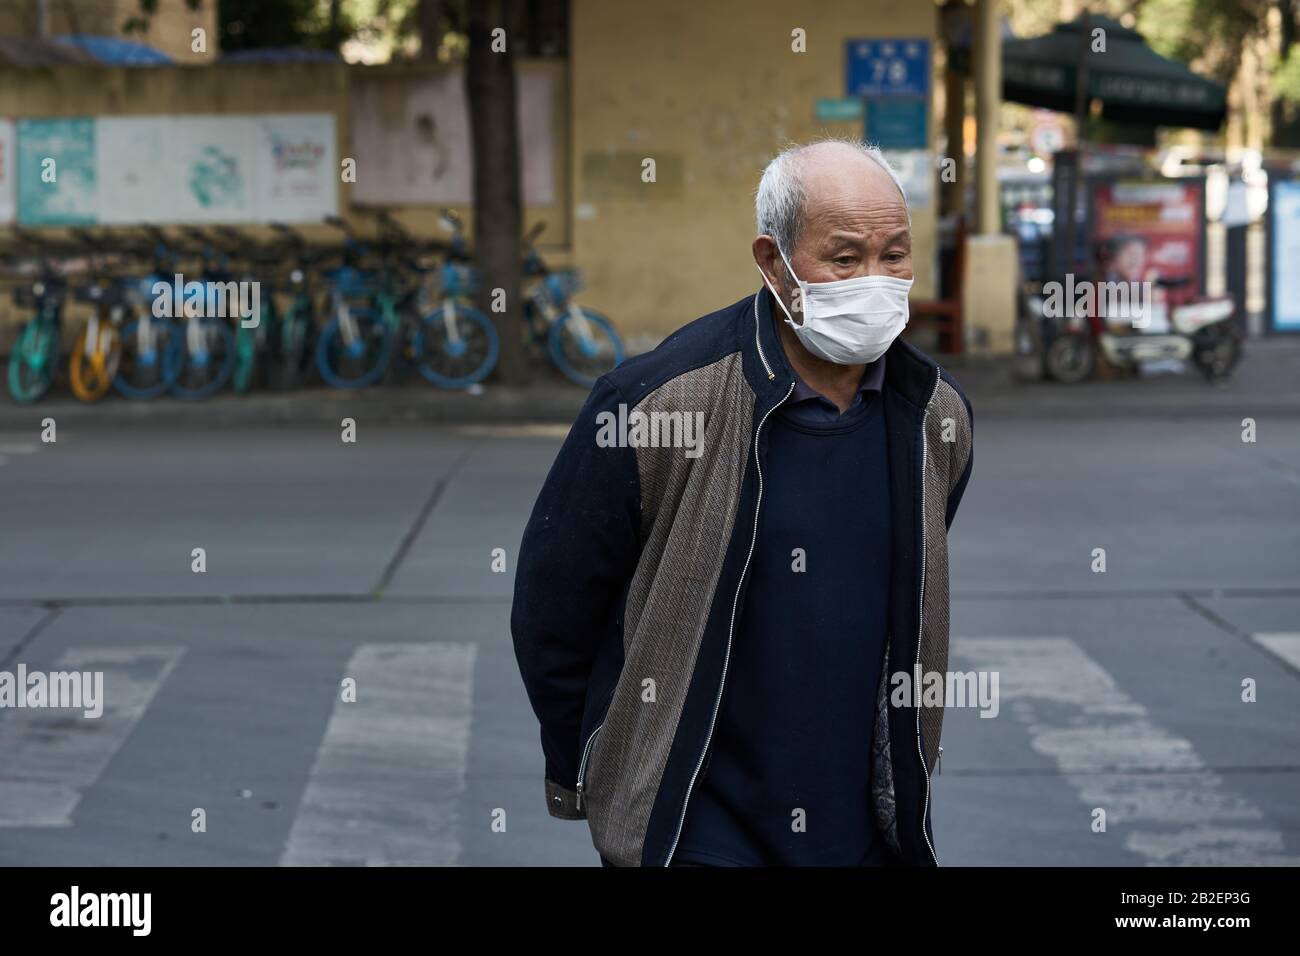 Durante el brote de la enfermedad de coronavirus que se extiende al planeta, un anciano llevaba una máscara quirúrgica en la calle para prevenir la enfermedad de coronavirus. Foto de stock